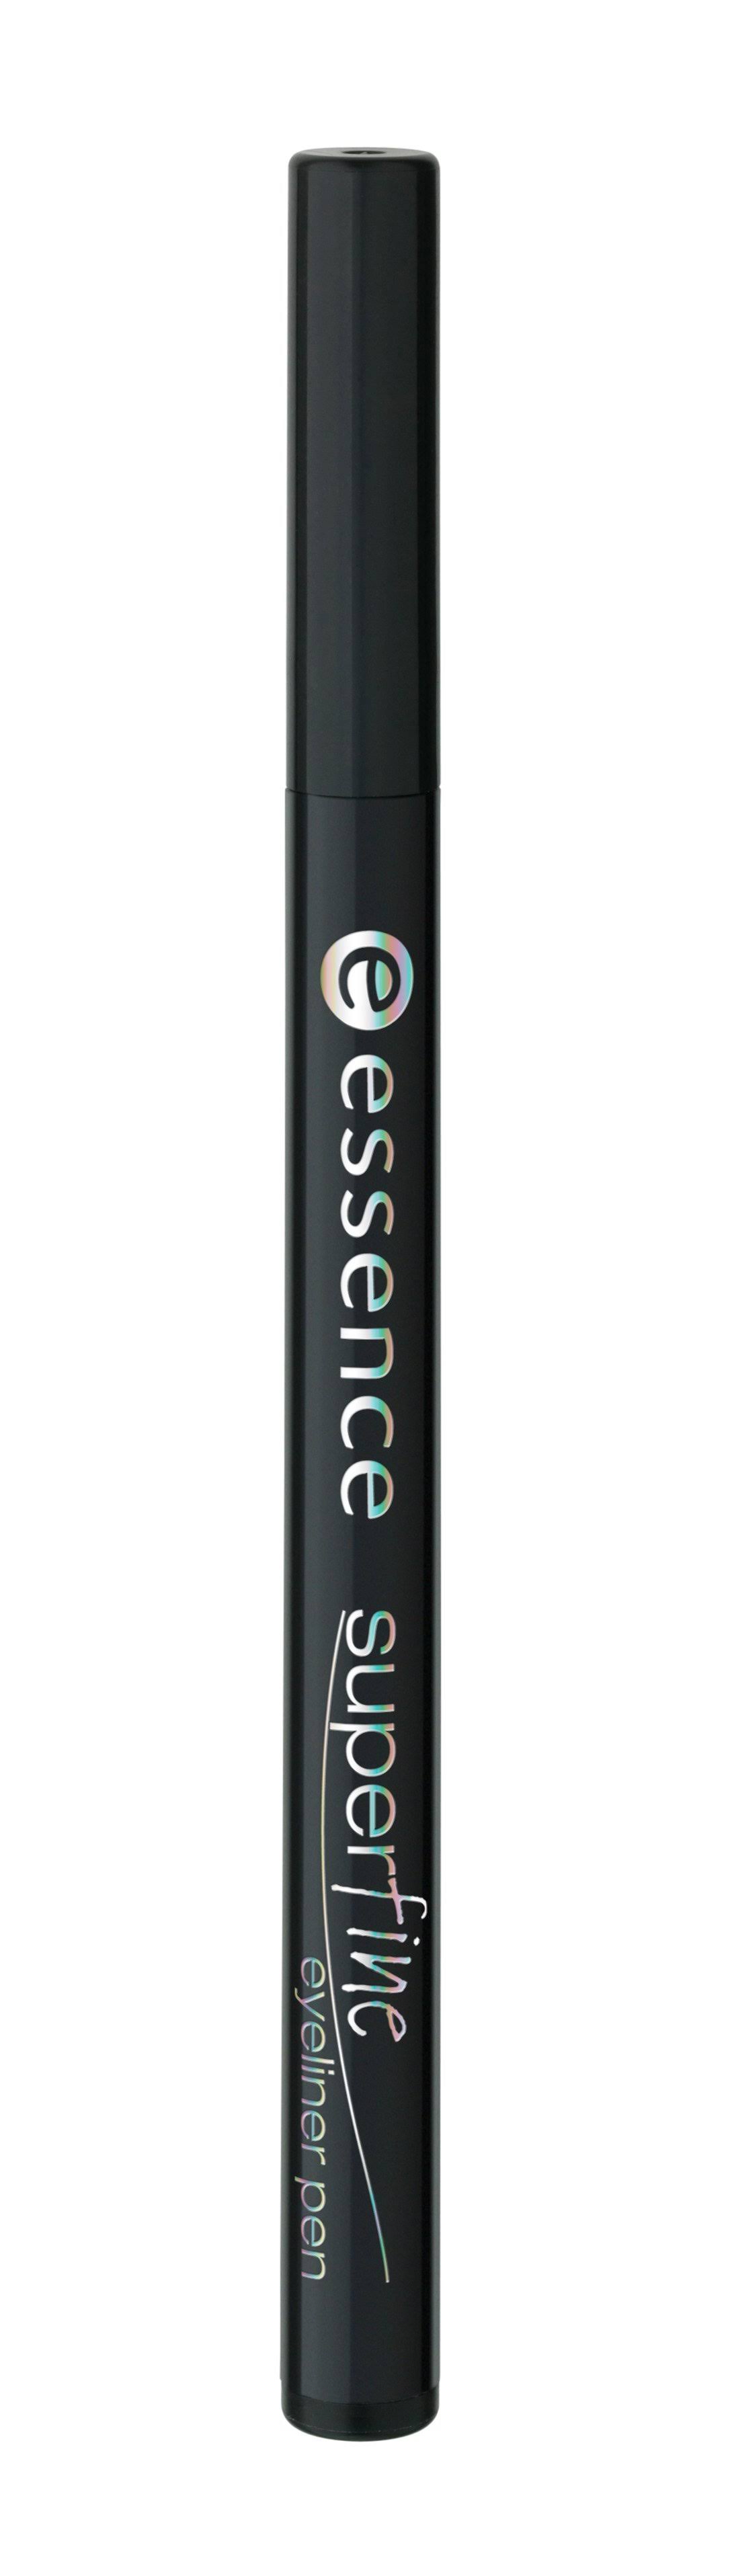 Essence Super Fine Eyeliner Pen - #01, Black